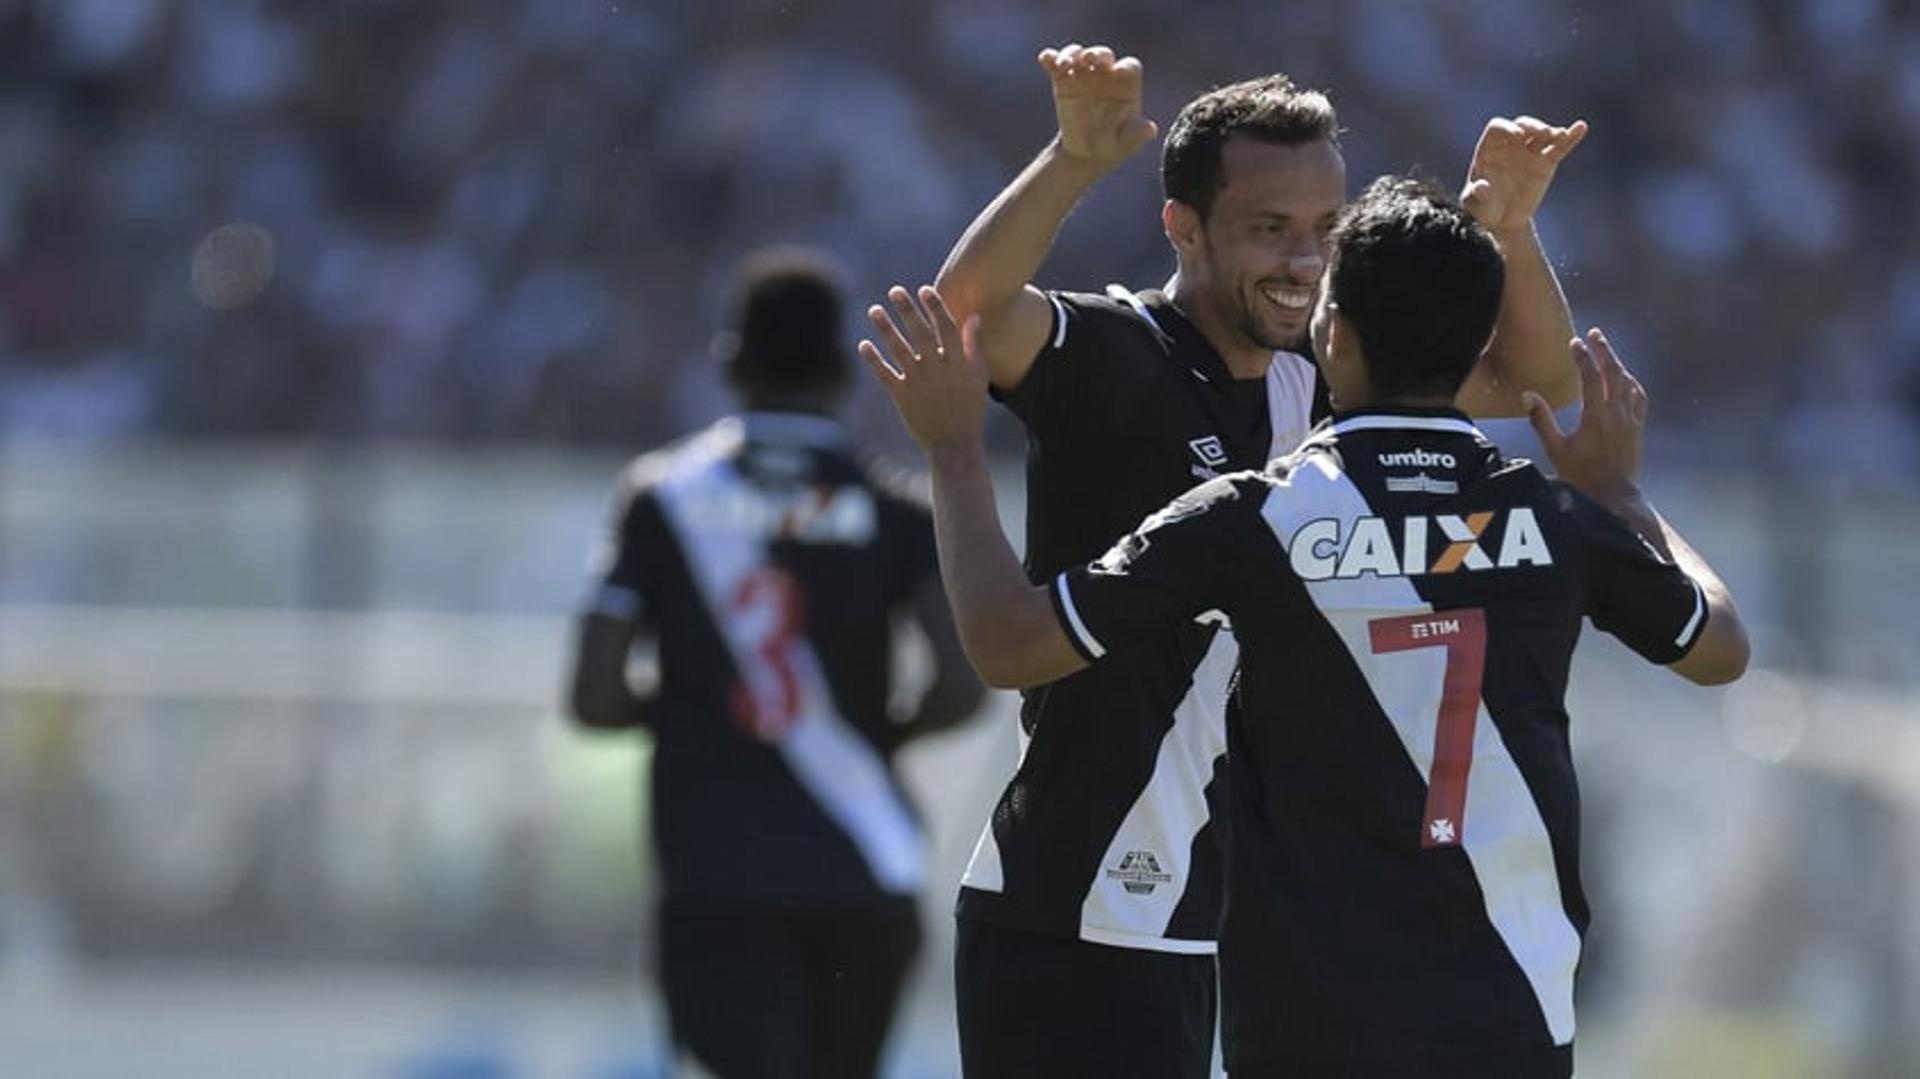 Vasco vence o Atlético-GO com gol de Nenê&nbsp;